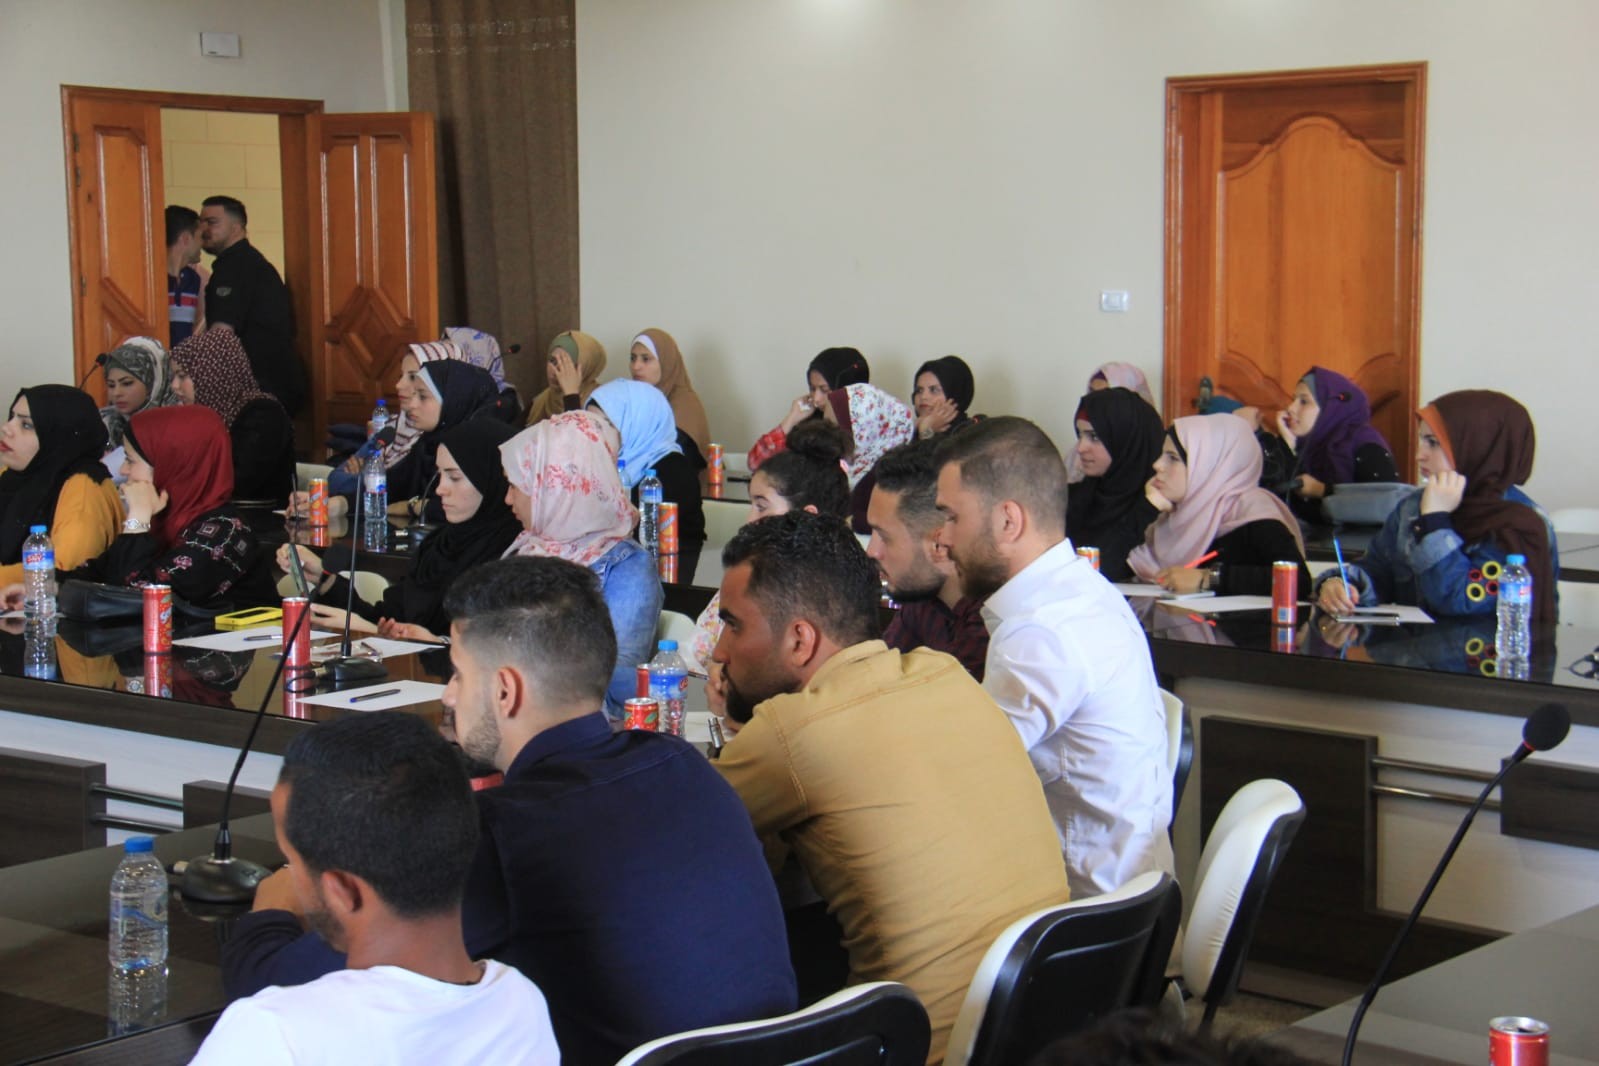 بالصور: الشبيبة الفتحاوية تعقد ندوة لبحث سُبل إجراء انتخابات مجالس الطلبة بجامعات غزّة